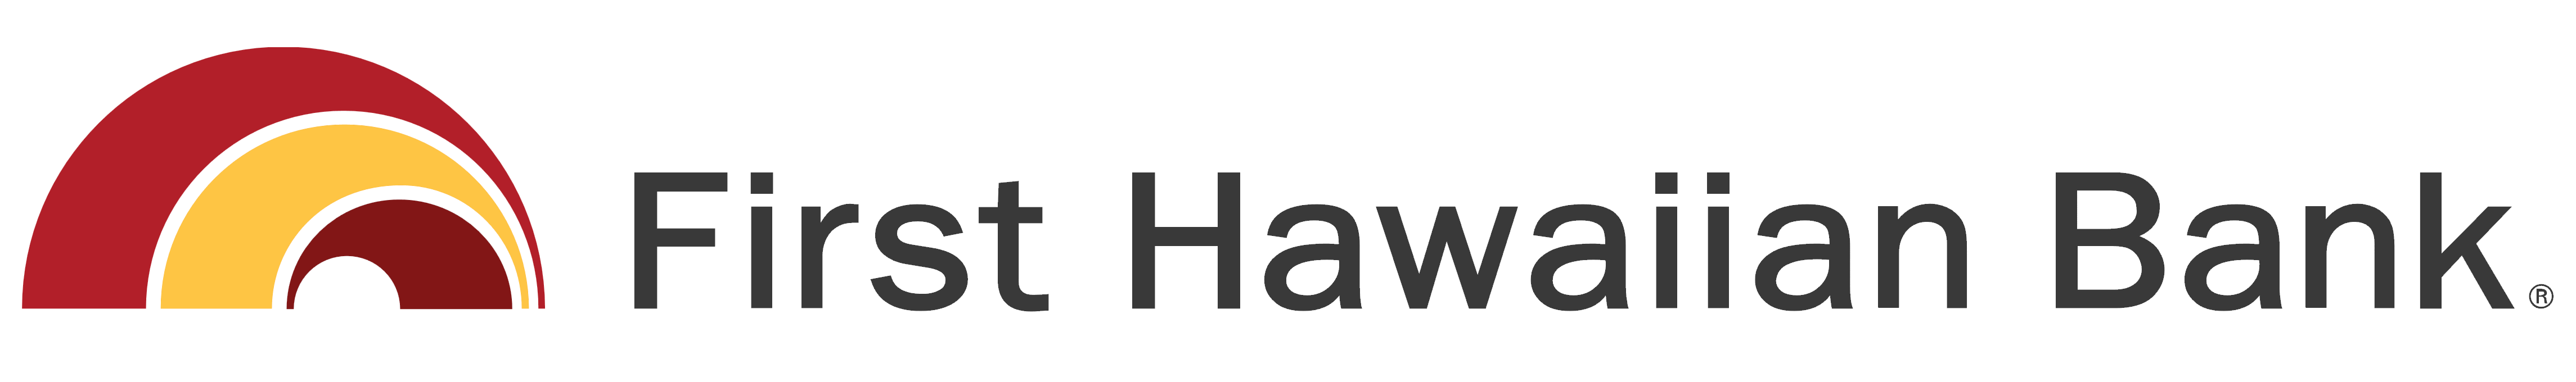 First Hawaiian Bank logo, logotype